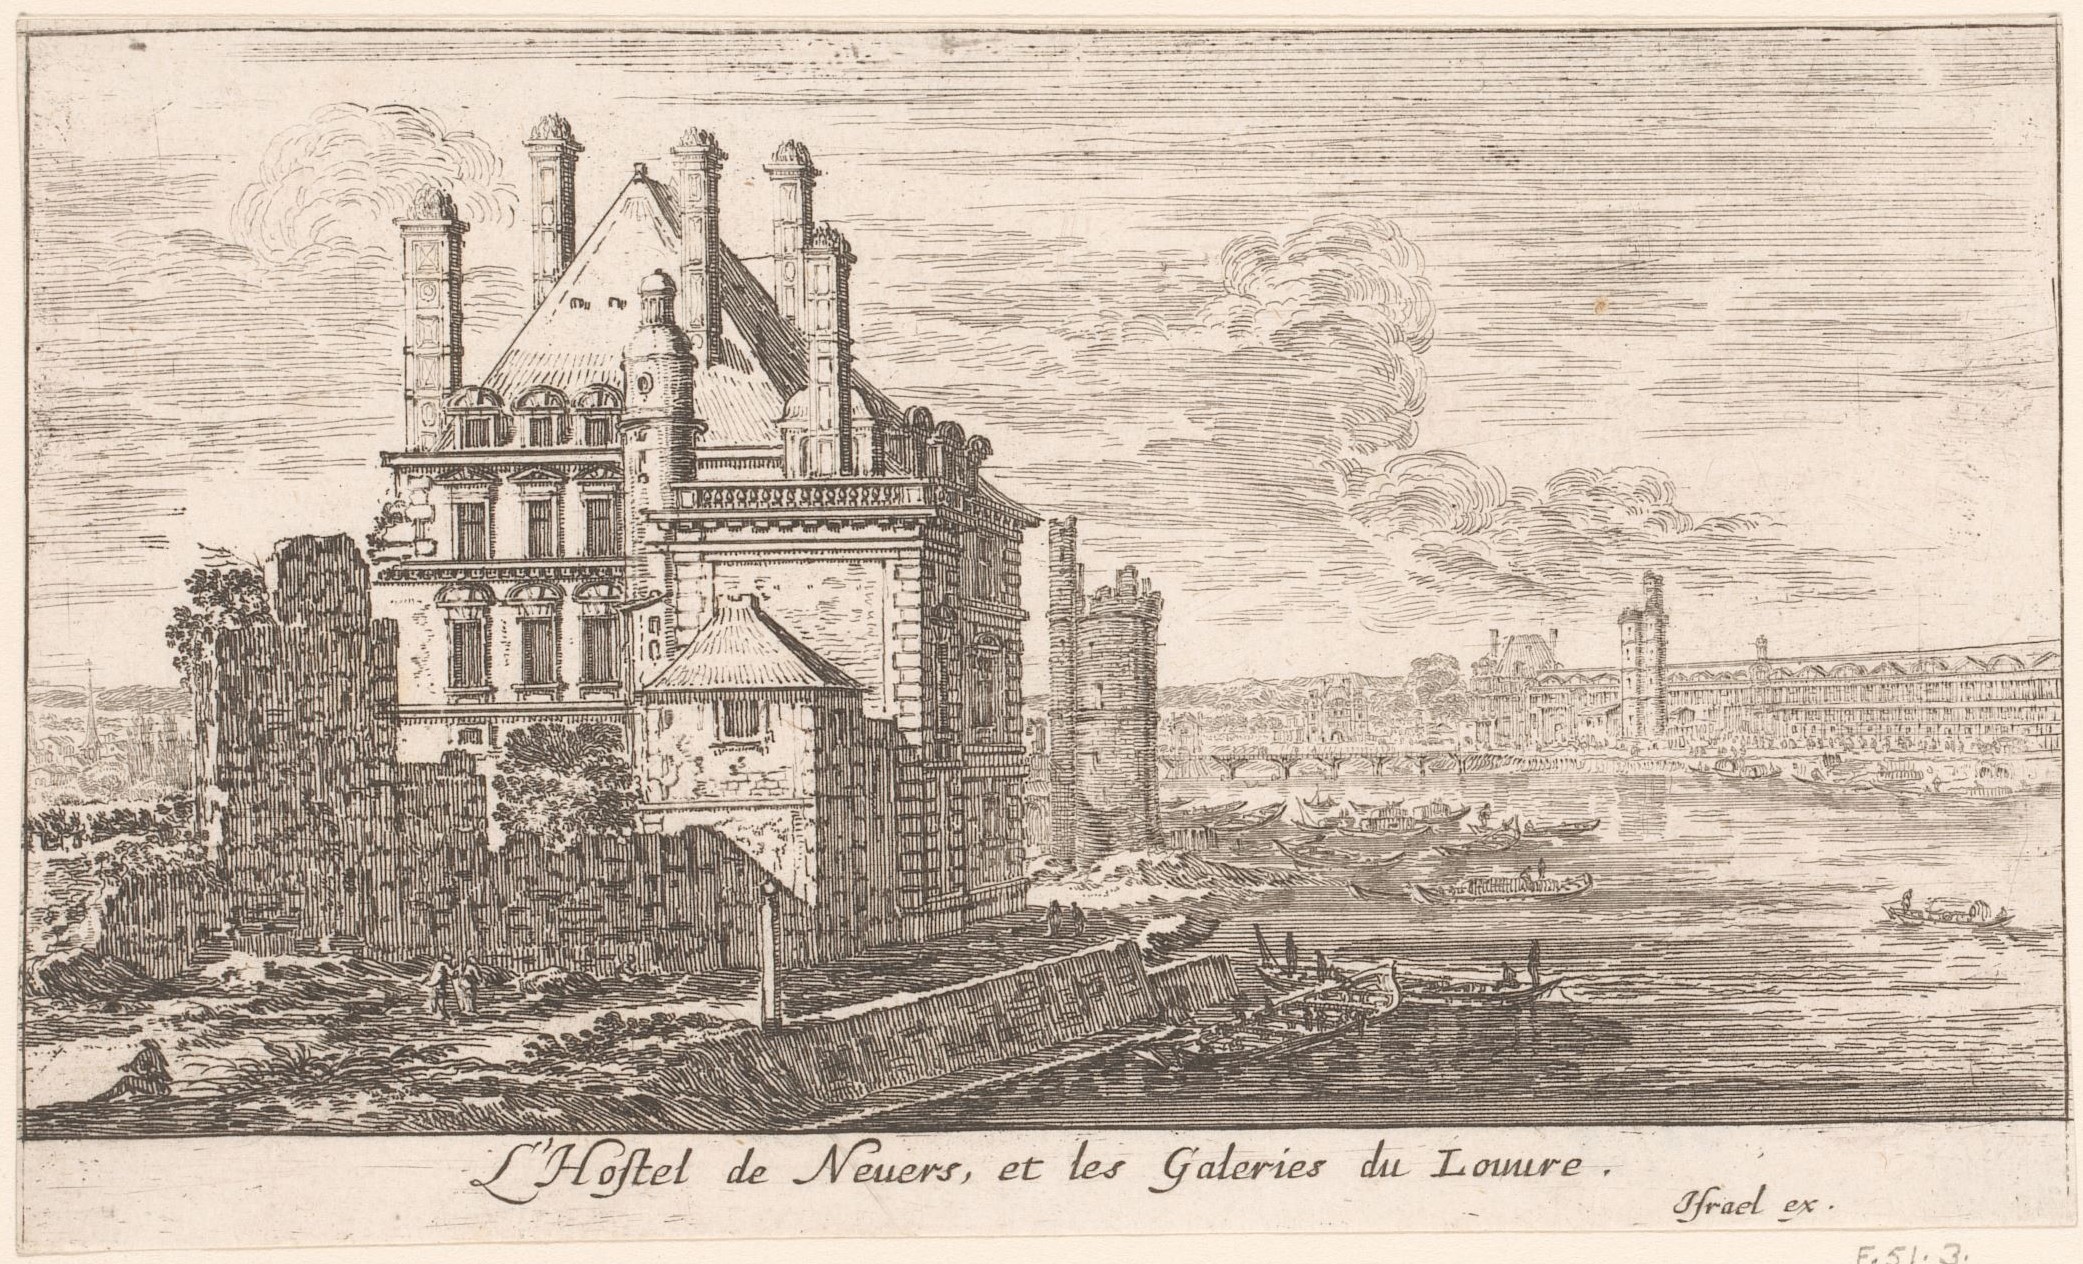 Israël Silvestre : L'Hostel de Nevers, et les Galeries du Louvre.